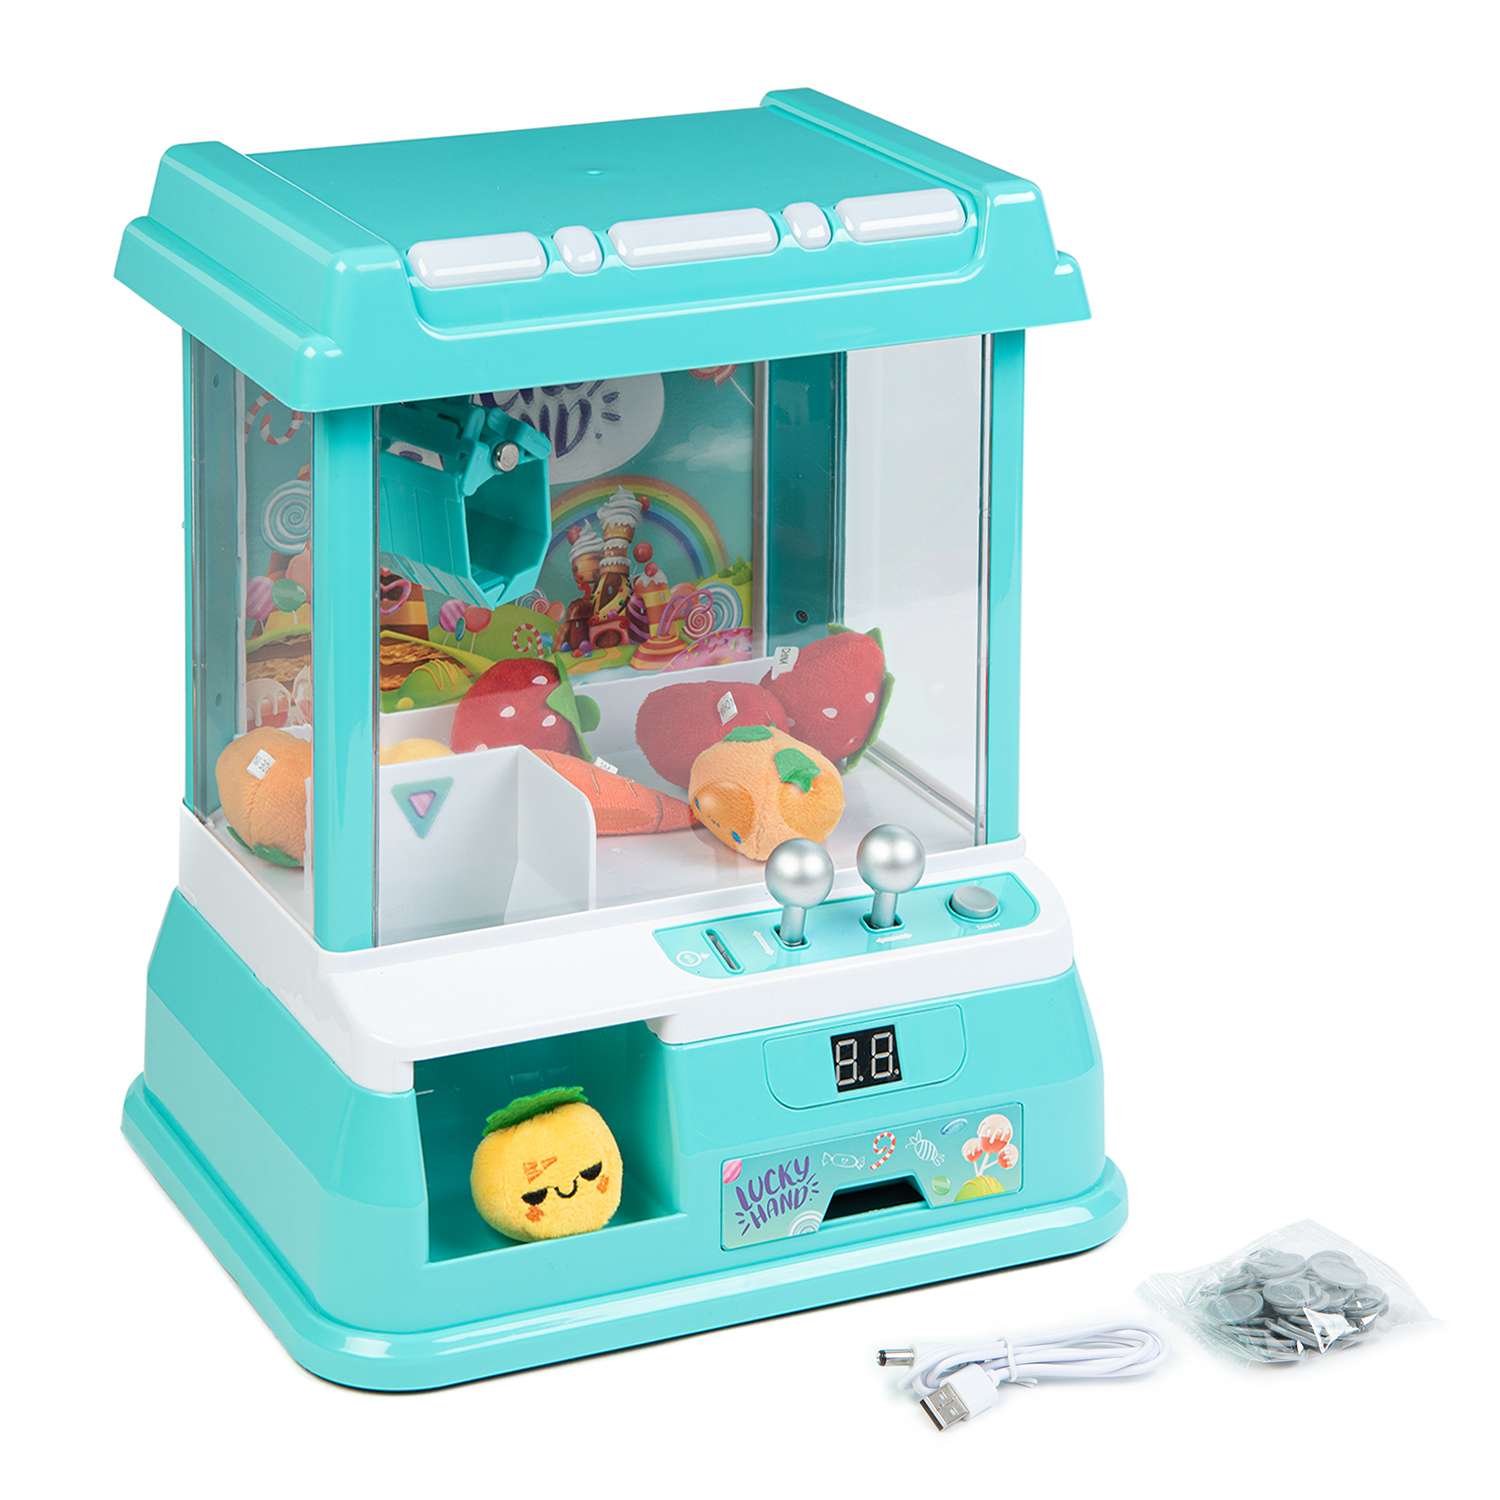 Игрушки для малышей в интернет-магазине TooToo